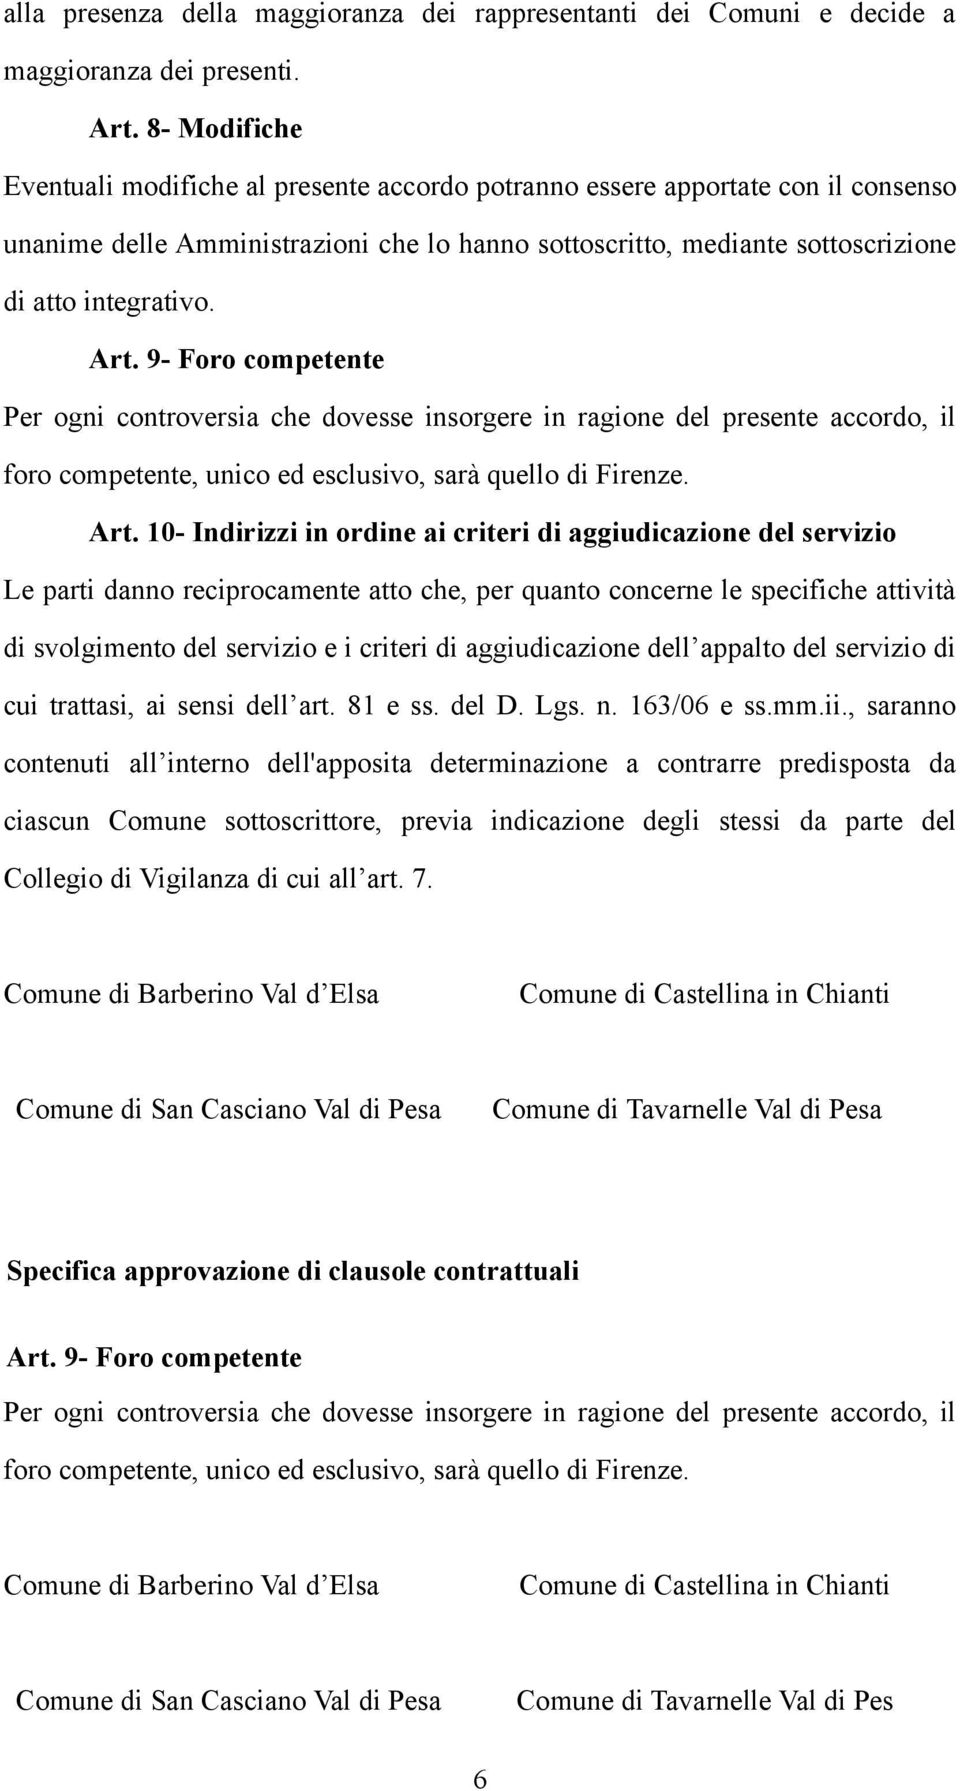 Art. 9- Foro competente Per ogni controversia che dovesse insorgere in ragione del presente accordo, il foro competente, unico ed esclusivo, sarà quello di Firenze. Art.